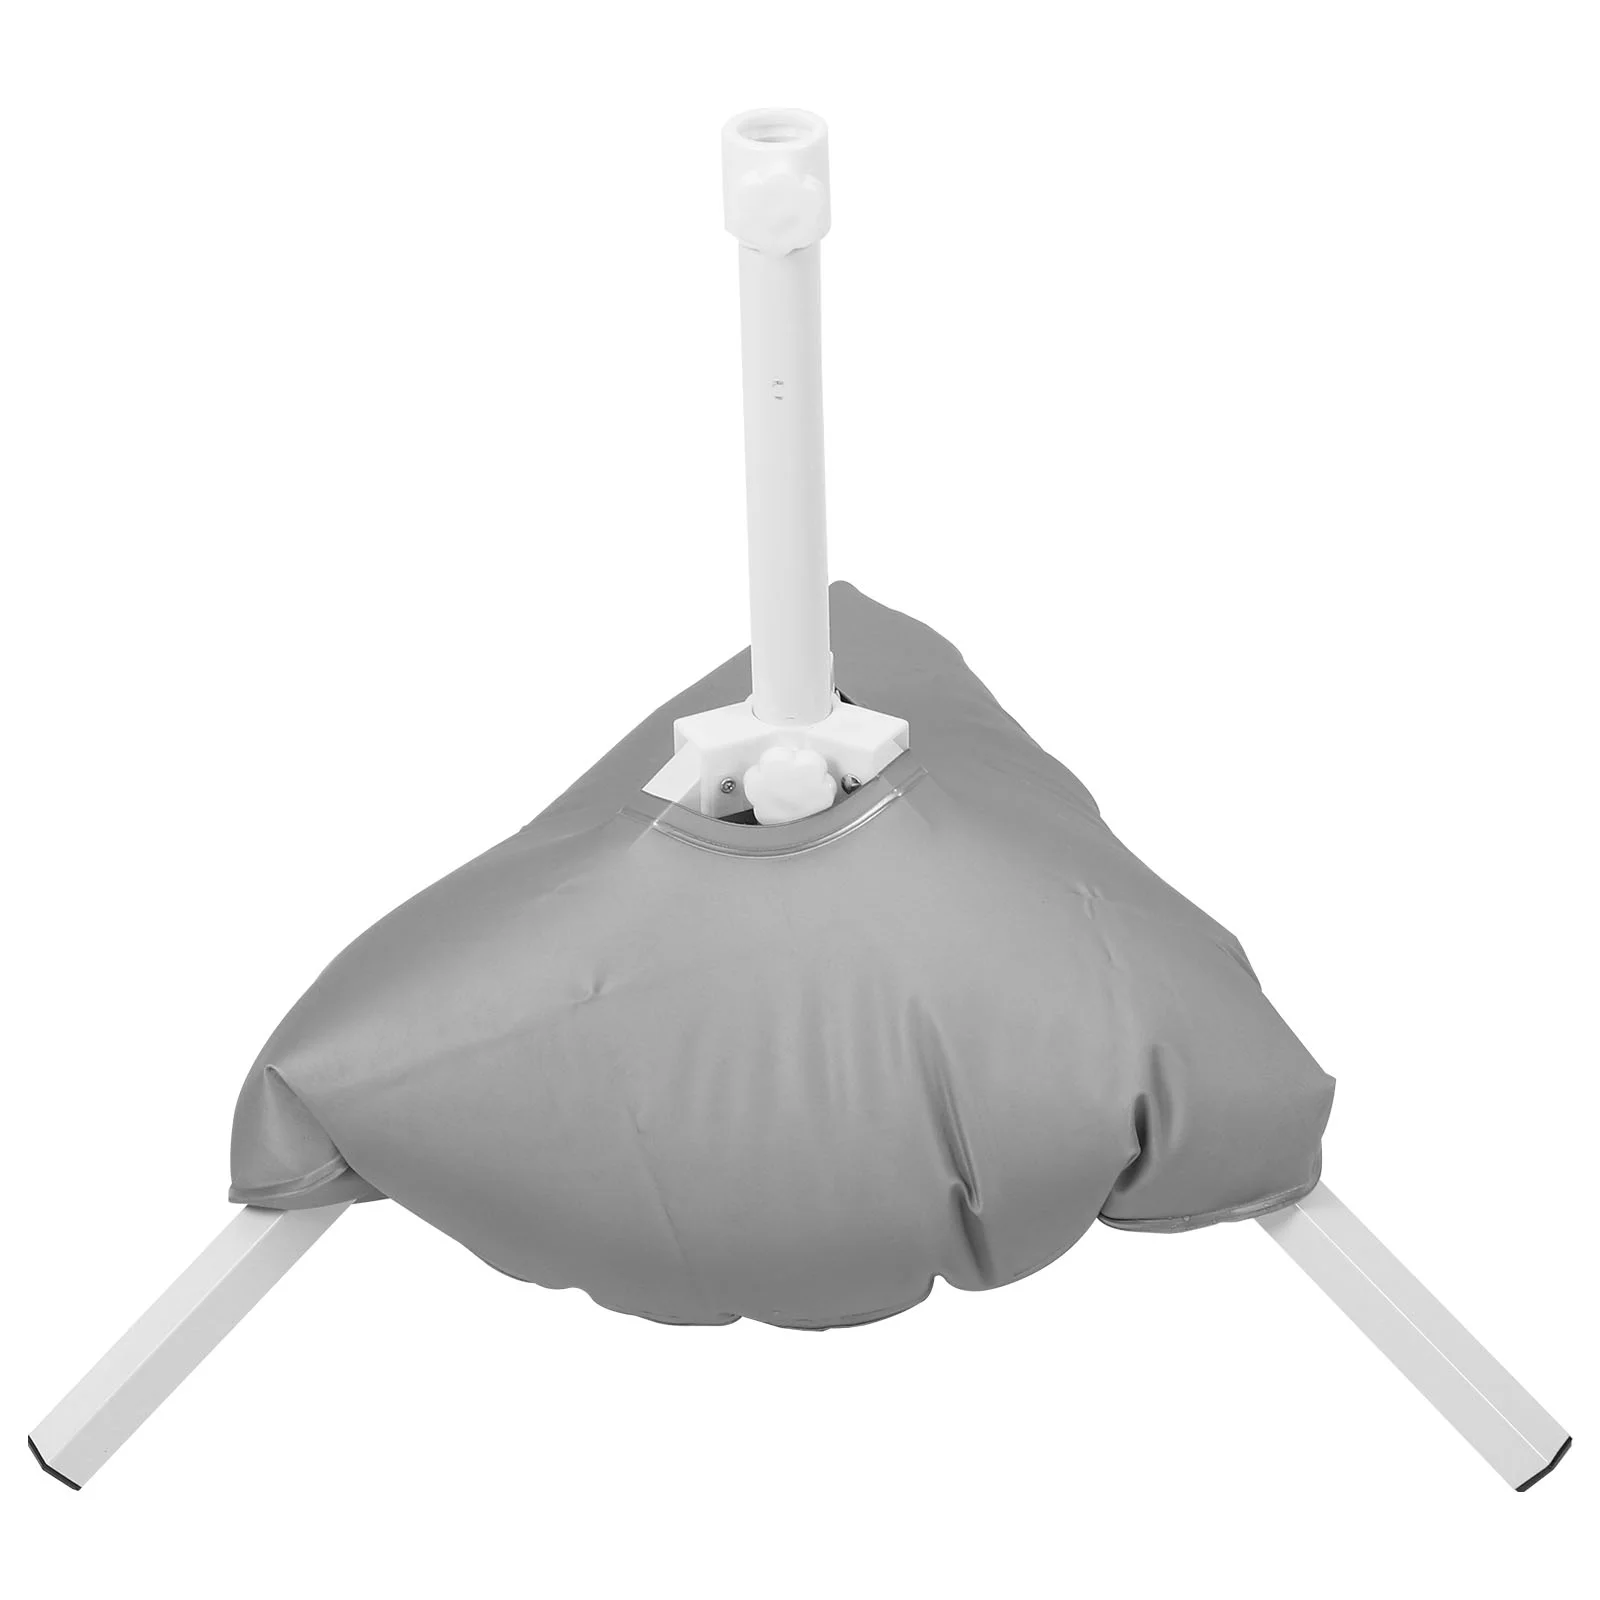 

Подставка для зонта, портативный мешок для пляжа, сада, патио, с металлической подставкой для защиты от солнца